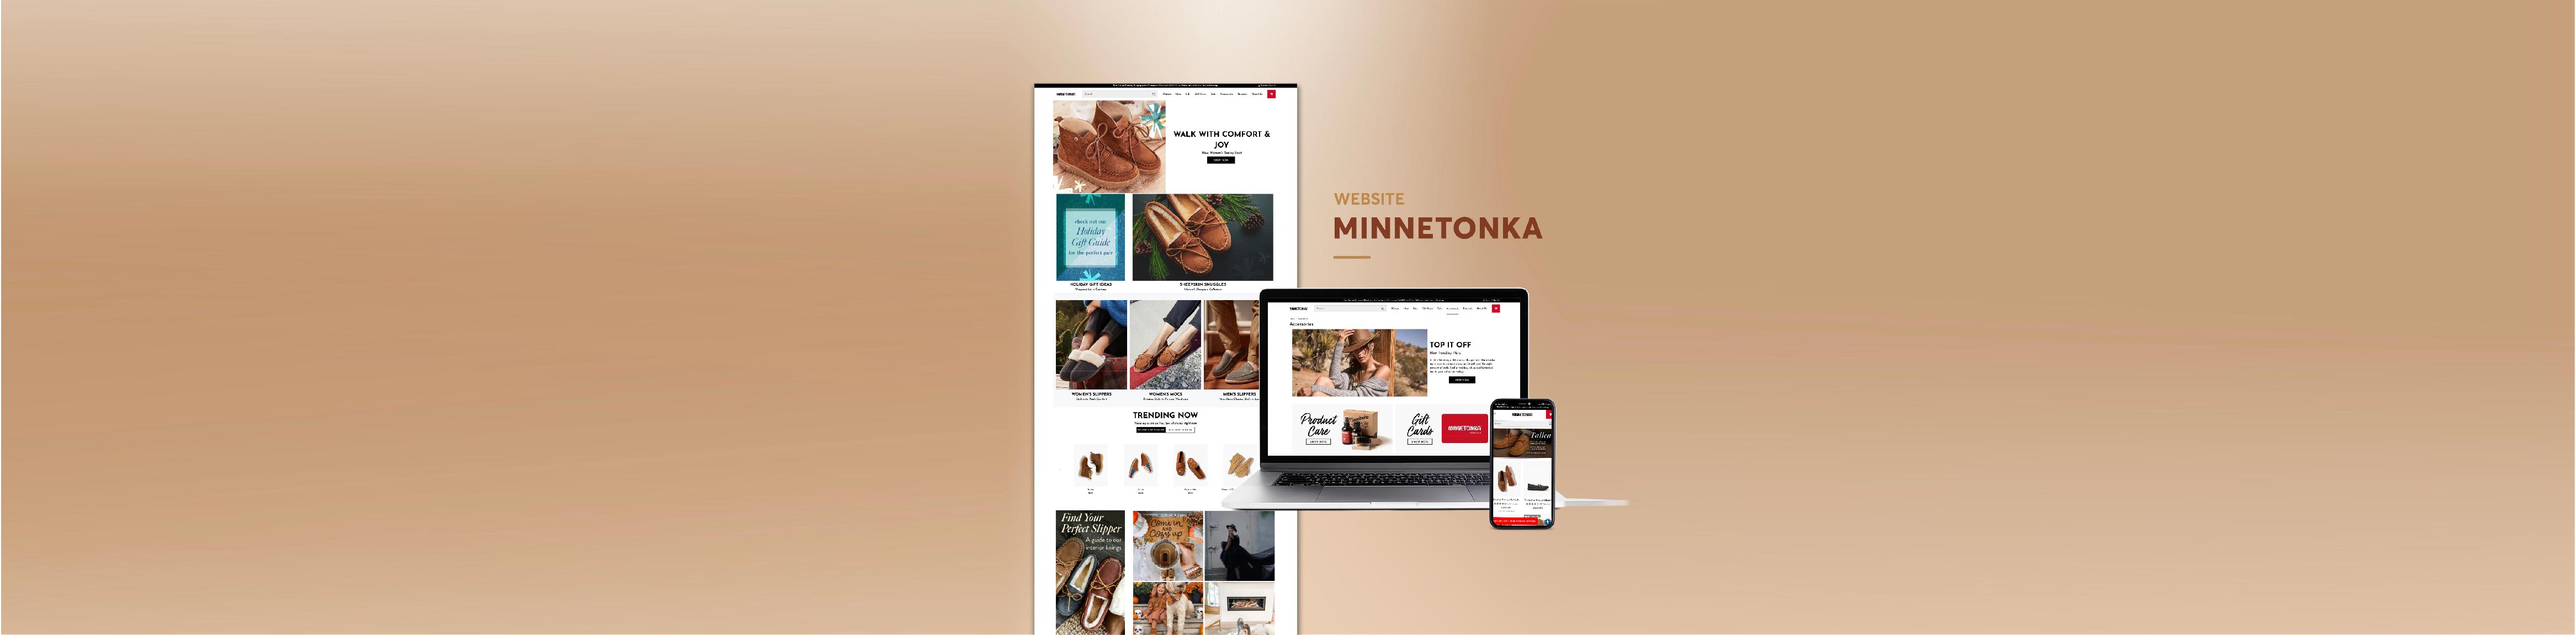 Thiết kế Website Minnetonka